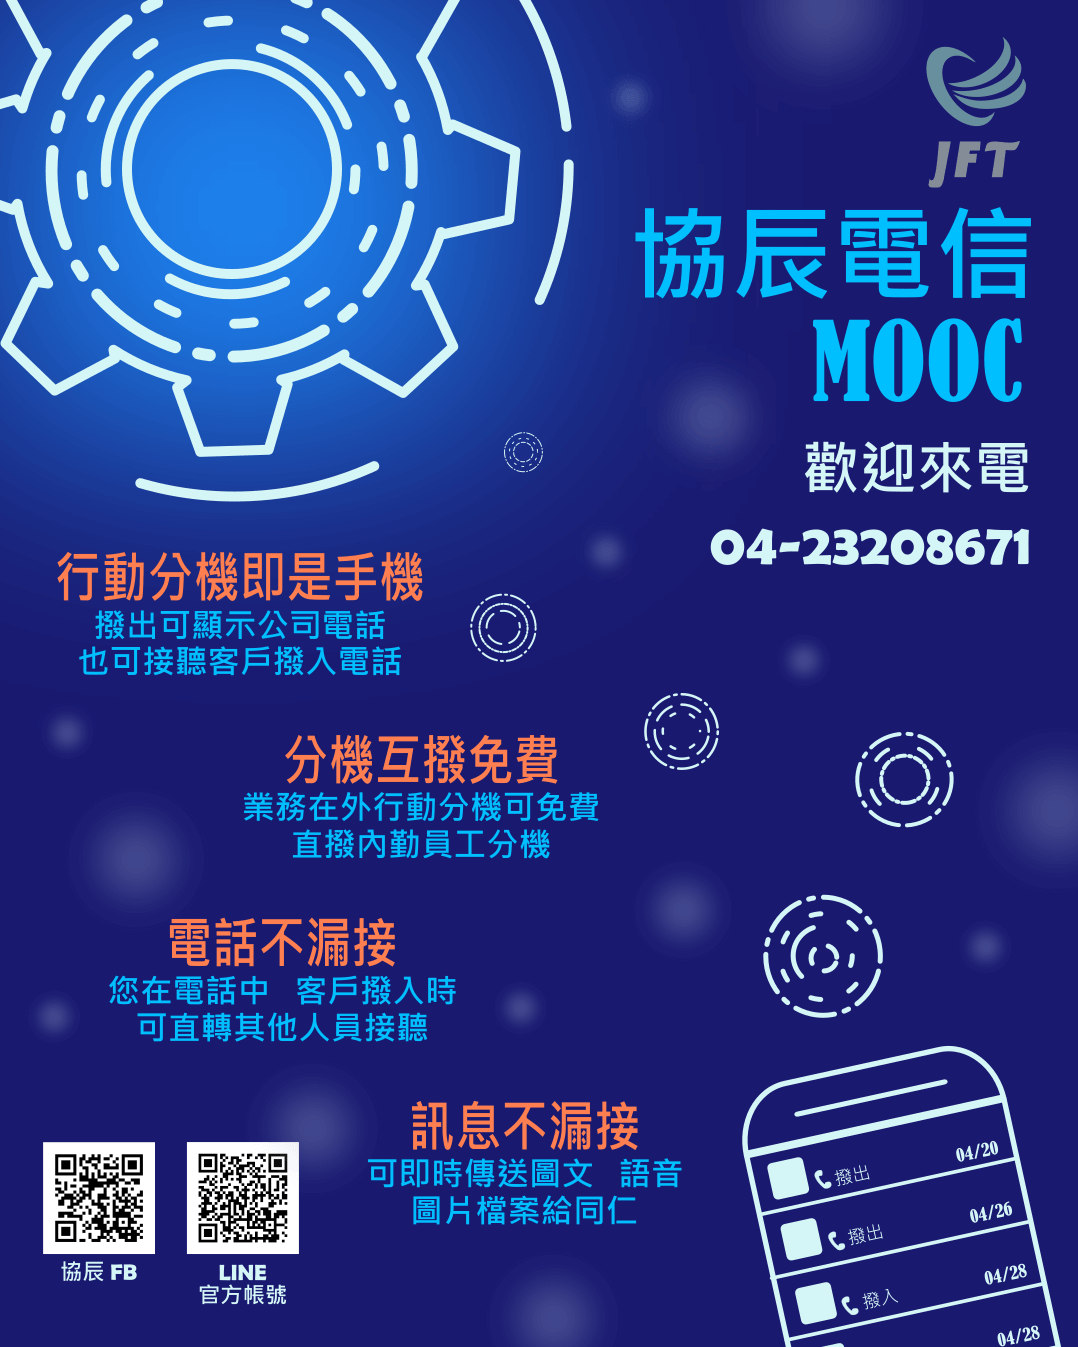 MOOC雲端總機DM，行動分機即是手機、互撥免費、電話不漏接、訊息不漏接。